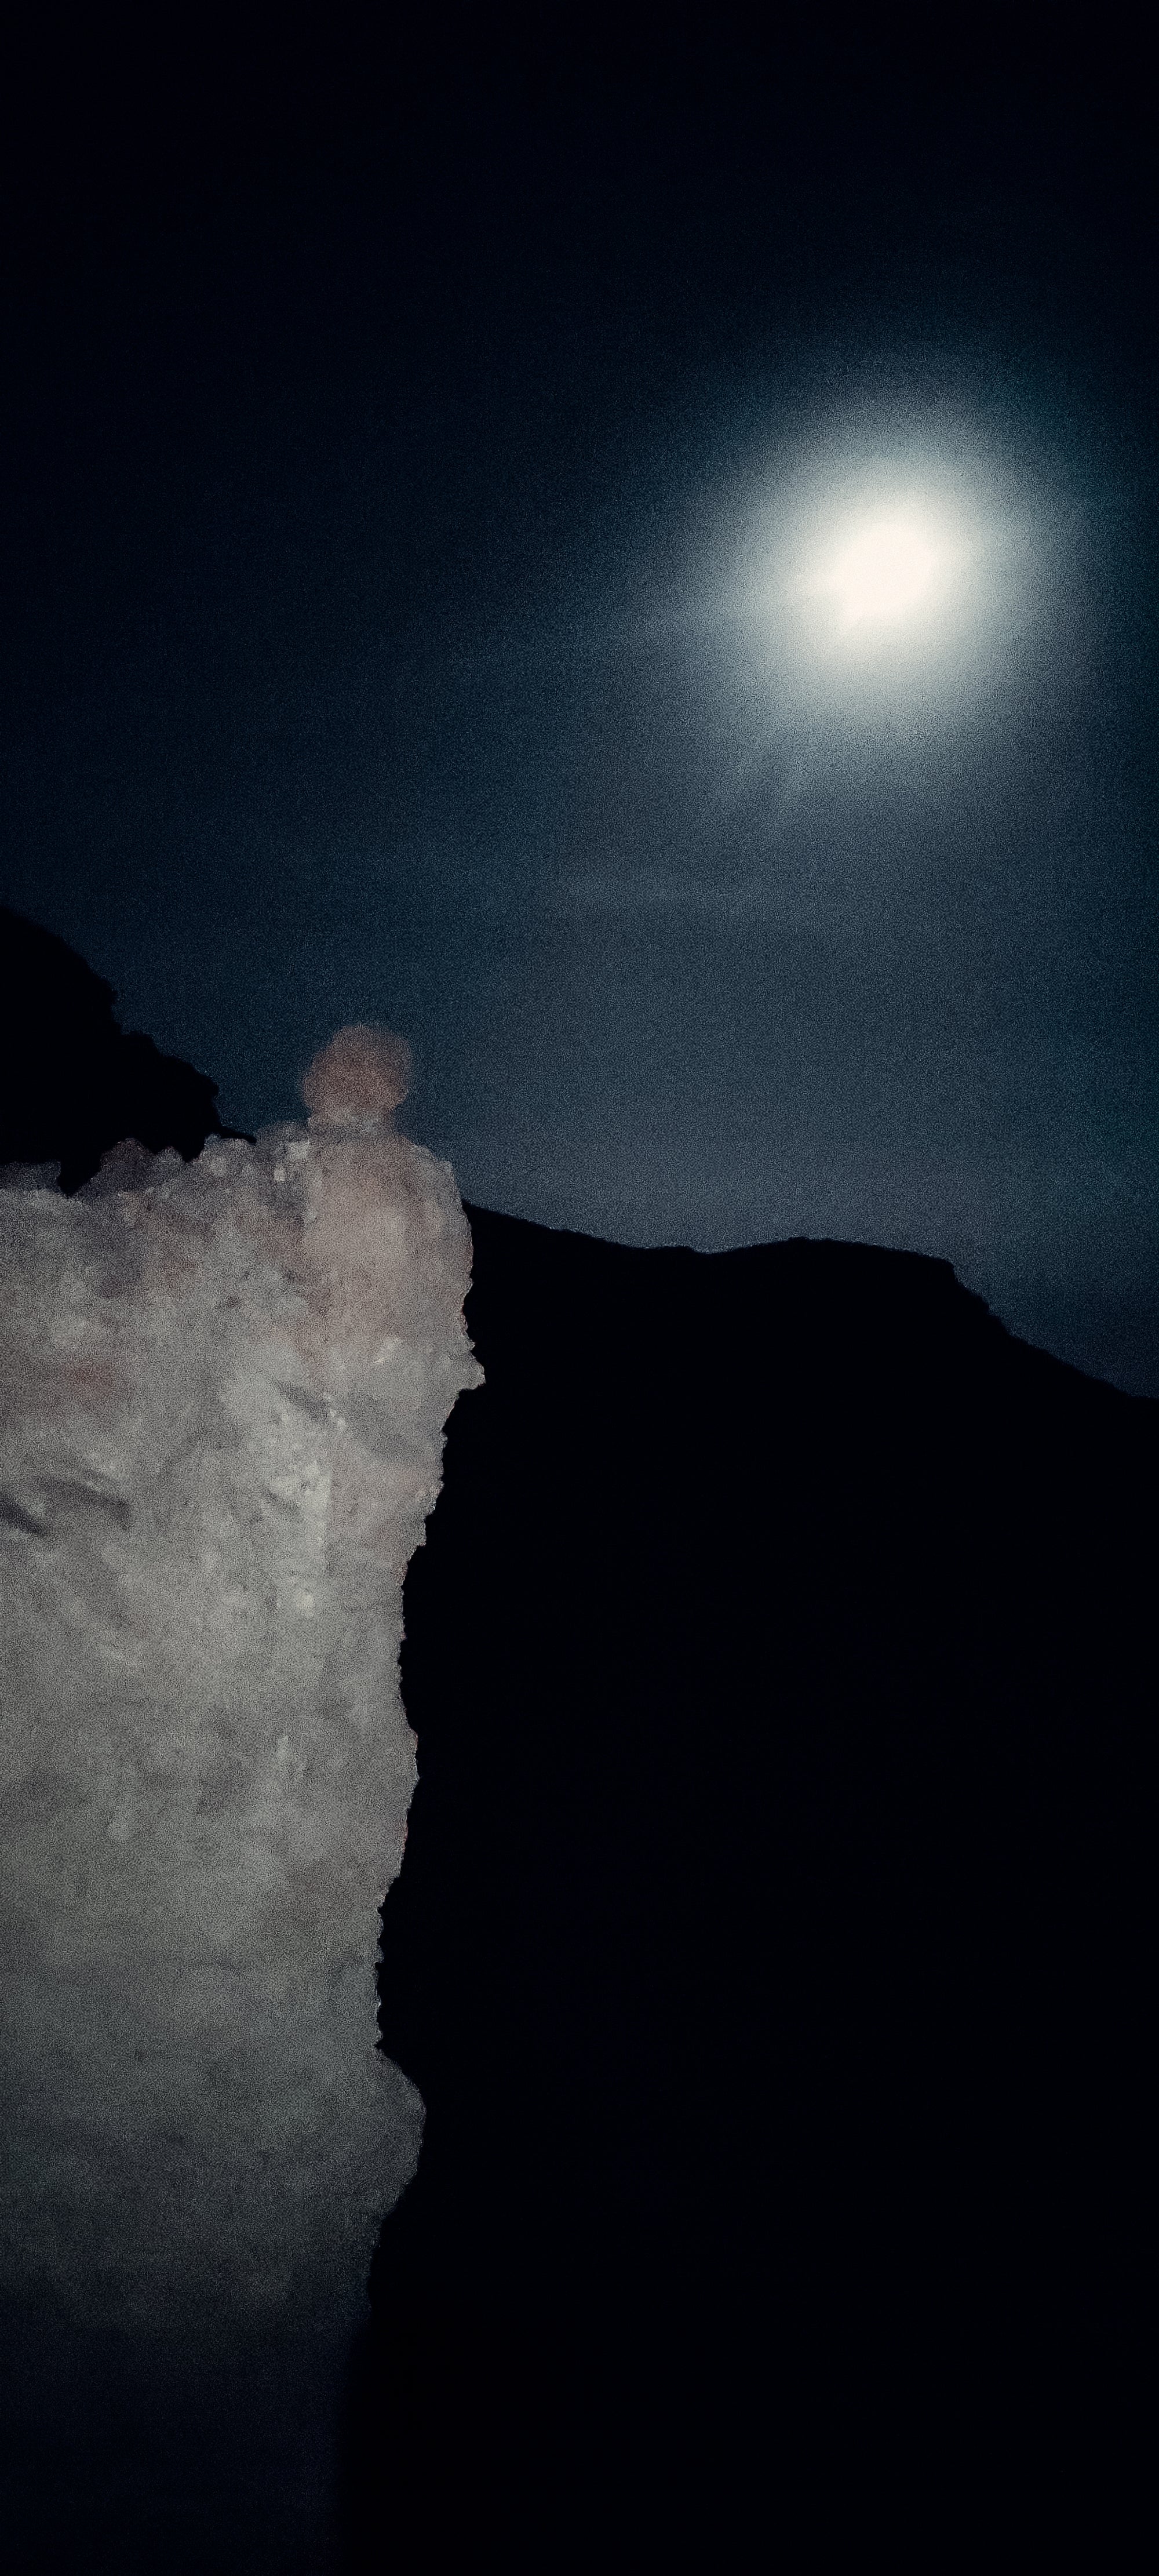 הרפתקה בנחל חלמיש - סנפלינג תחת אור הירח